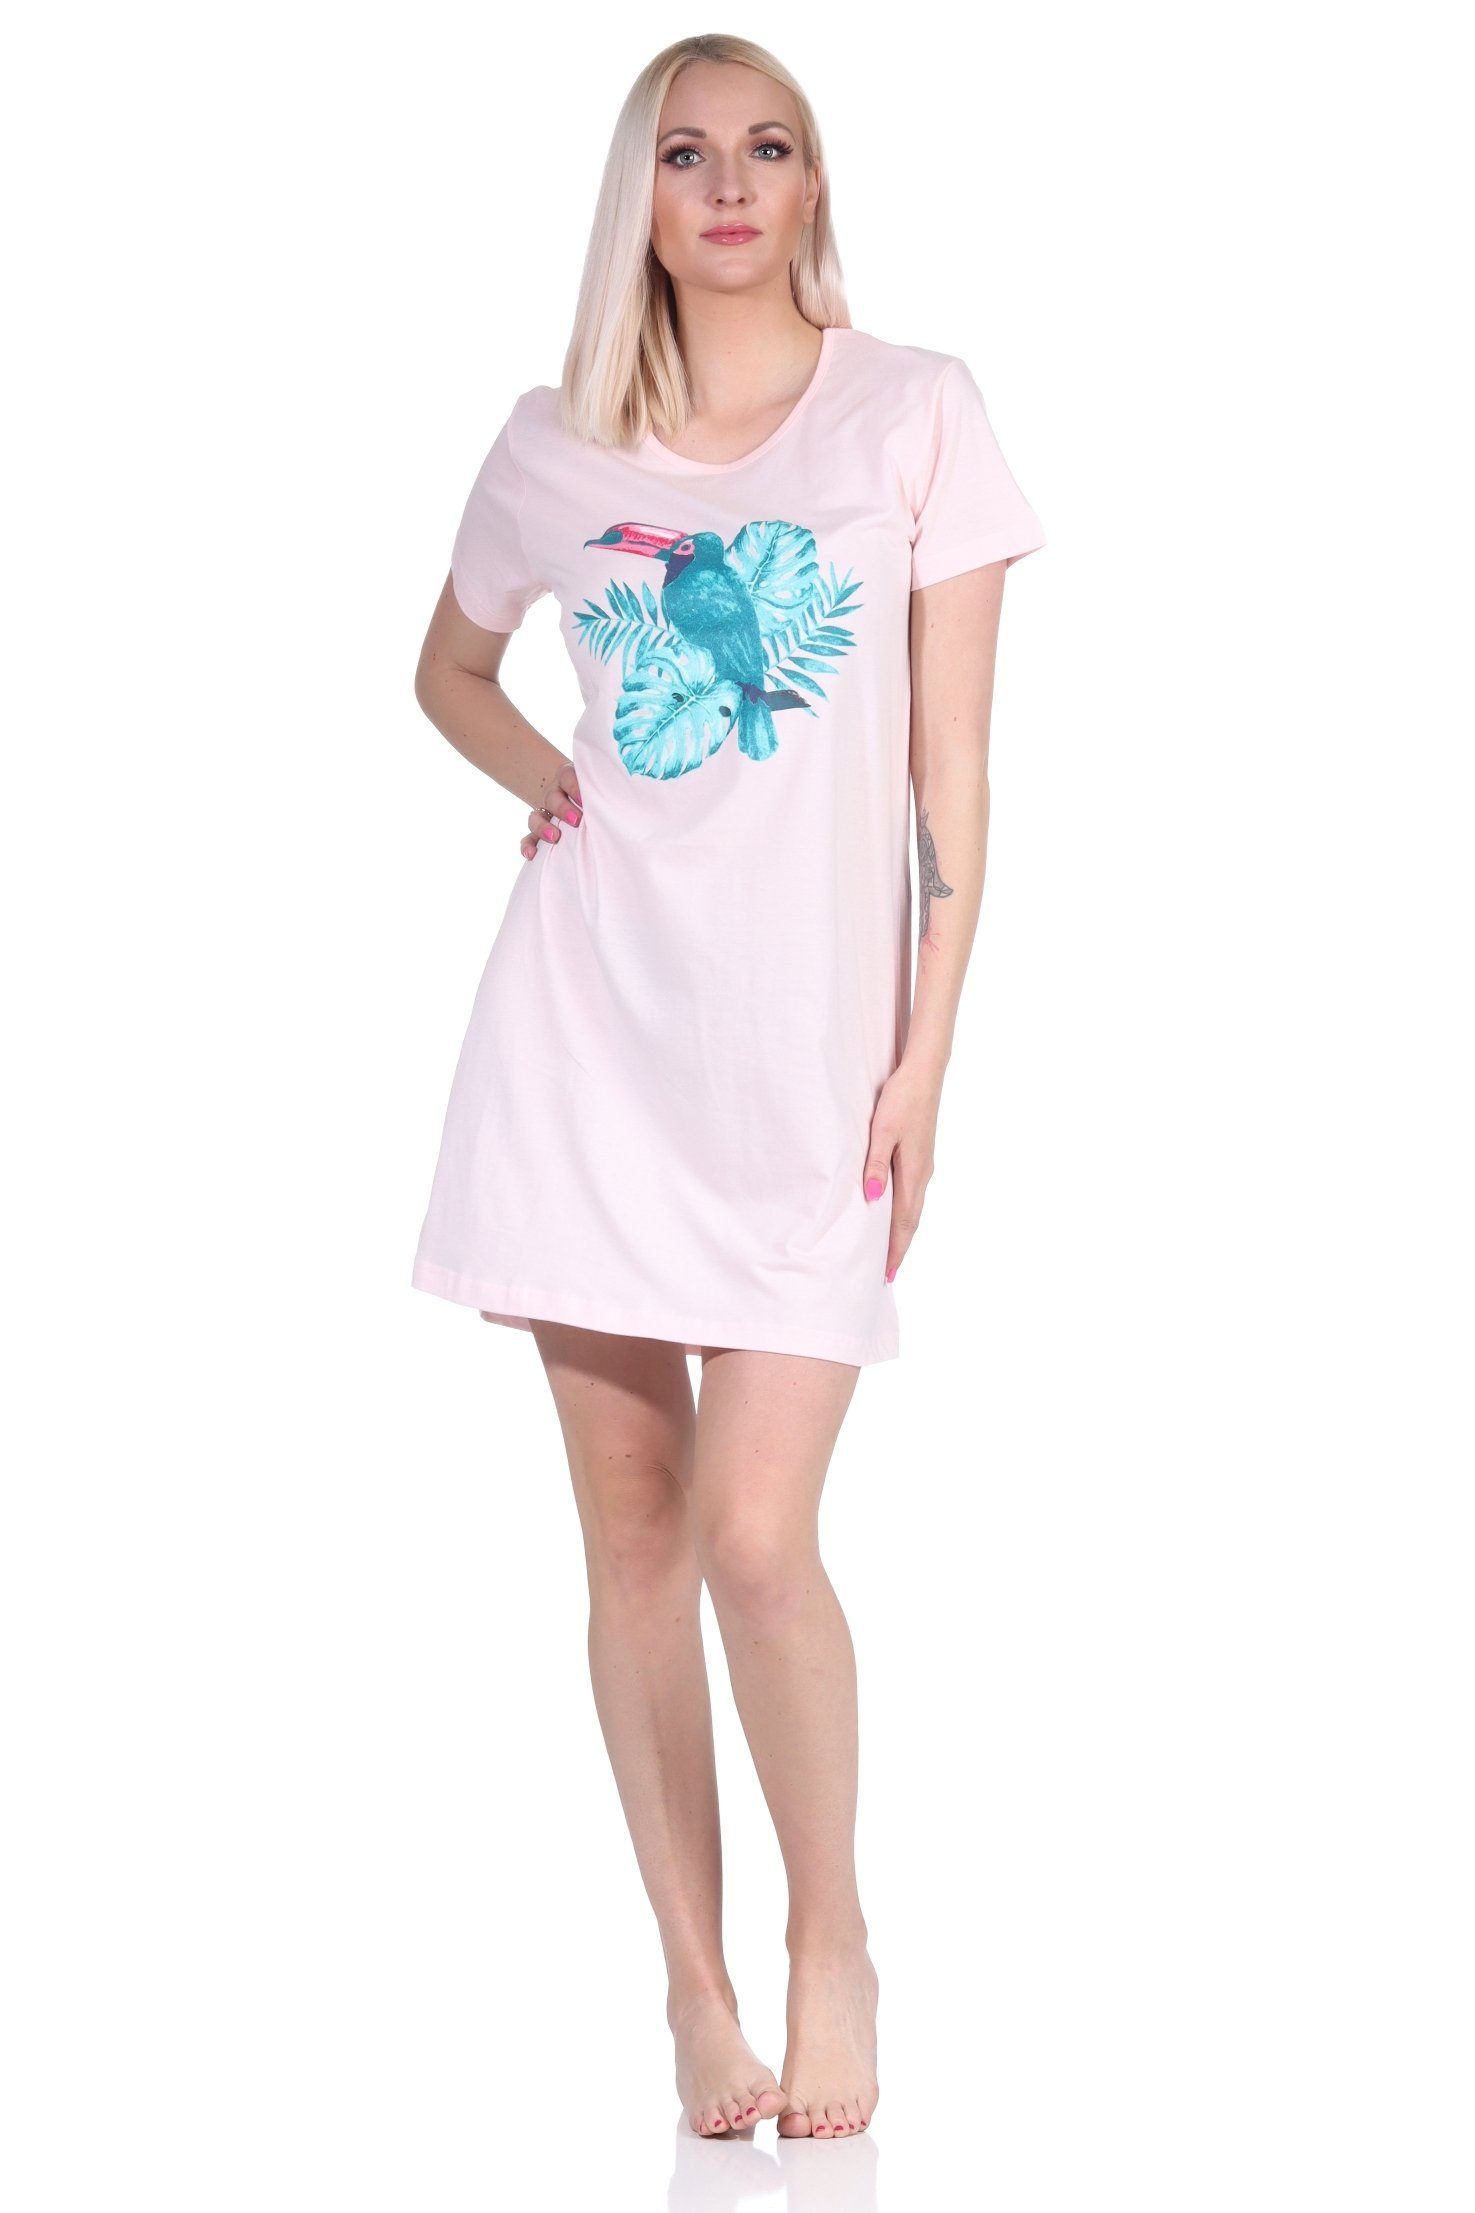 Normann Nachthemd Damen 2er Pack kurzarm Schlafshirt Nachthemd Designs in farbenfrohen